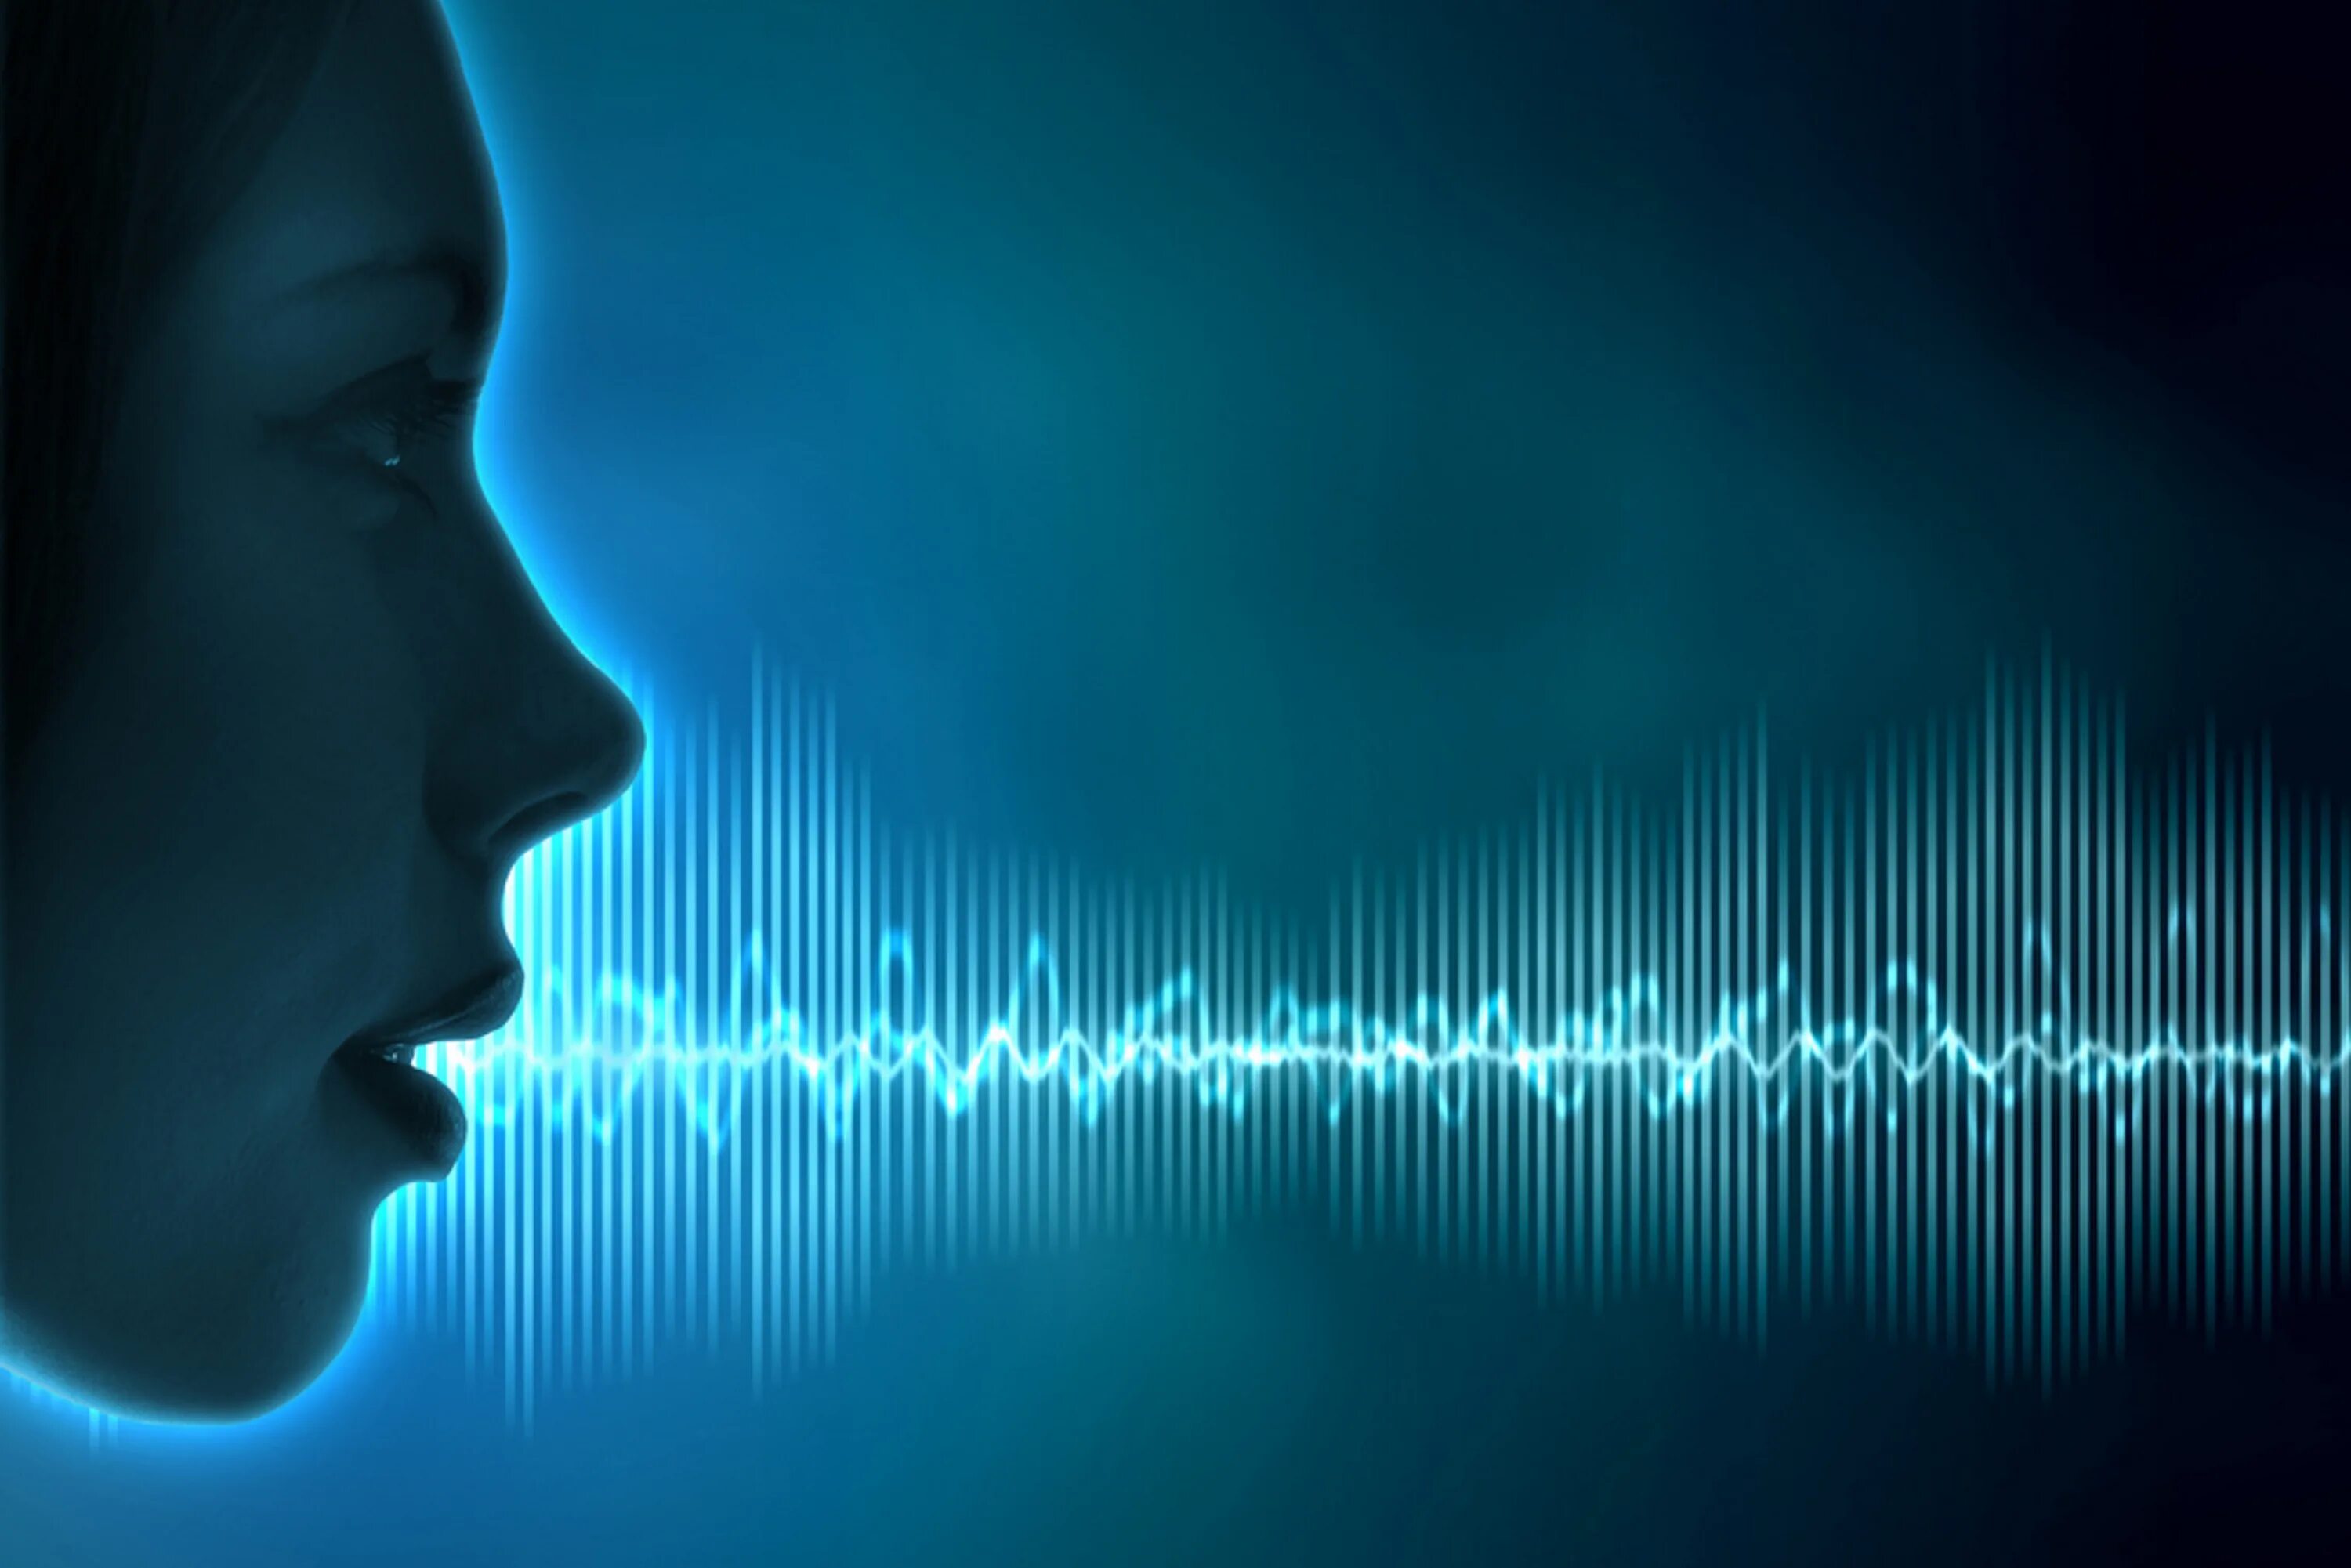 Картинка голосовое. Голос человека. Звуковая волна. Распознавание речи. Голосовая биометрия.